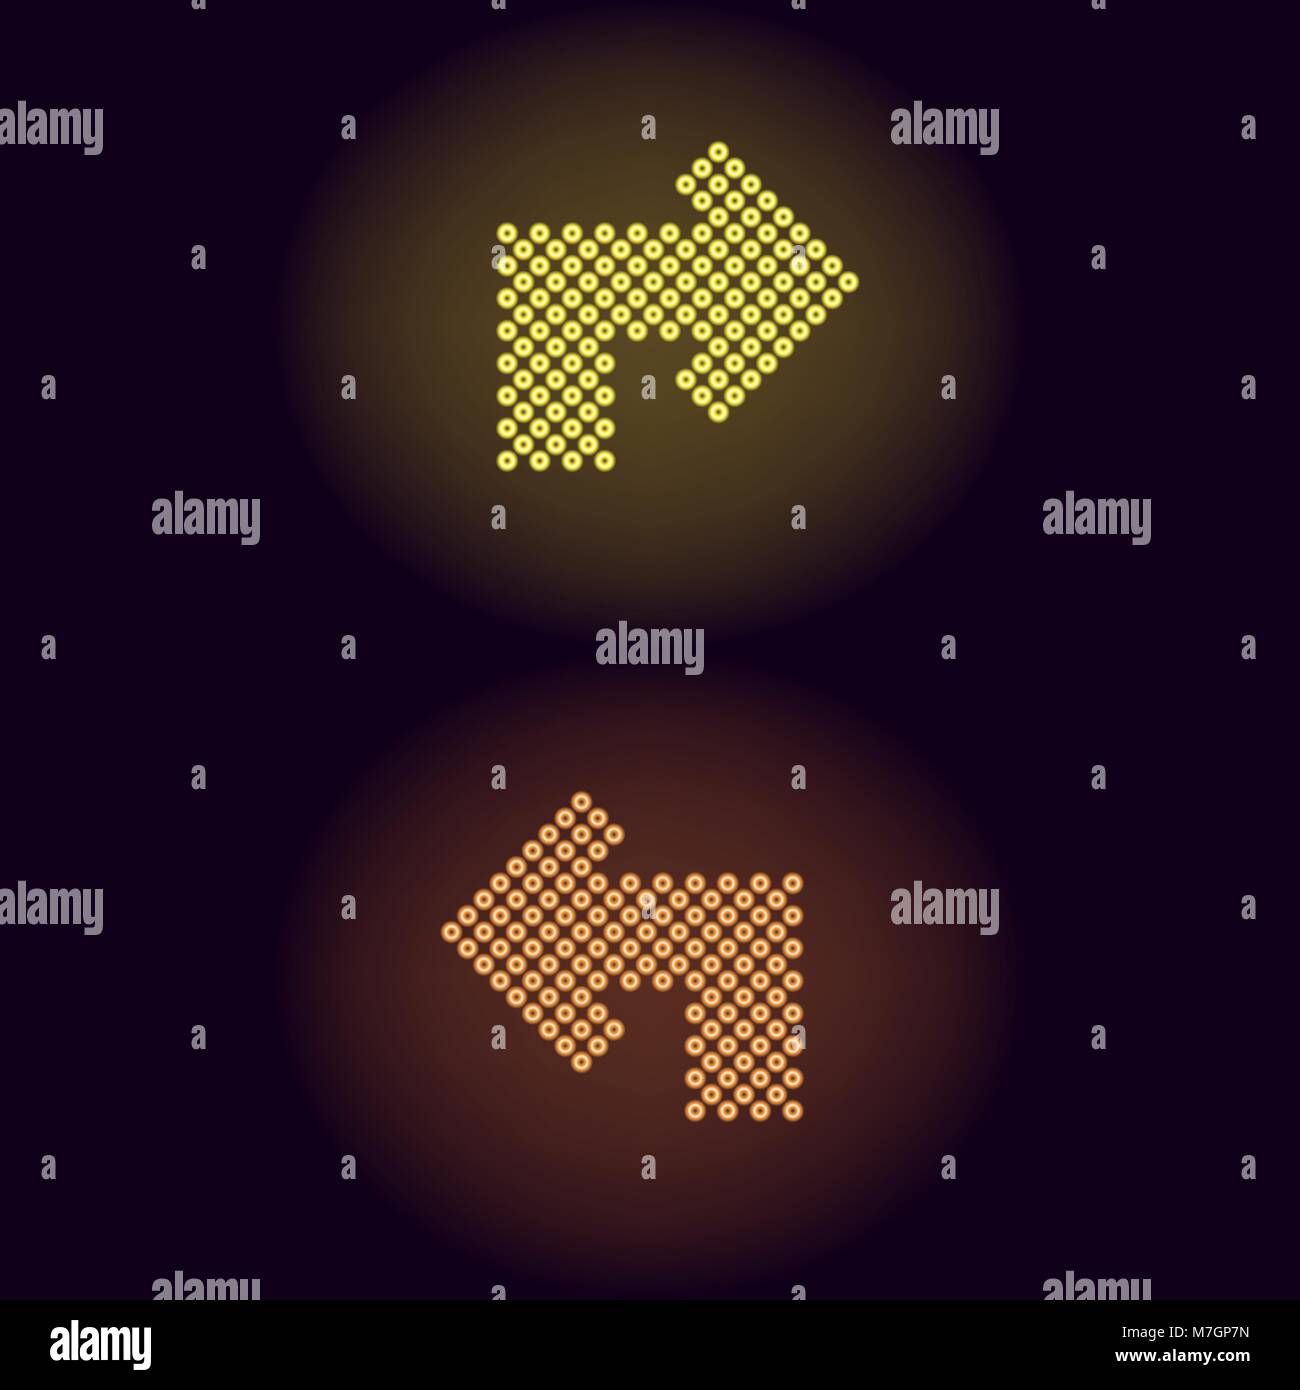 Flecha de neón amarillo y naranja con anillos. Ilustración vectorial de girar la flecha de neón que consta de muchos anillos con retroiluminación del fondo oscuro Ilustración del Vector